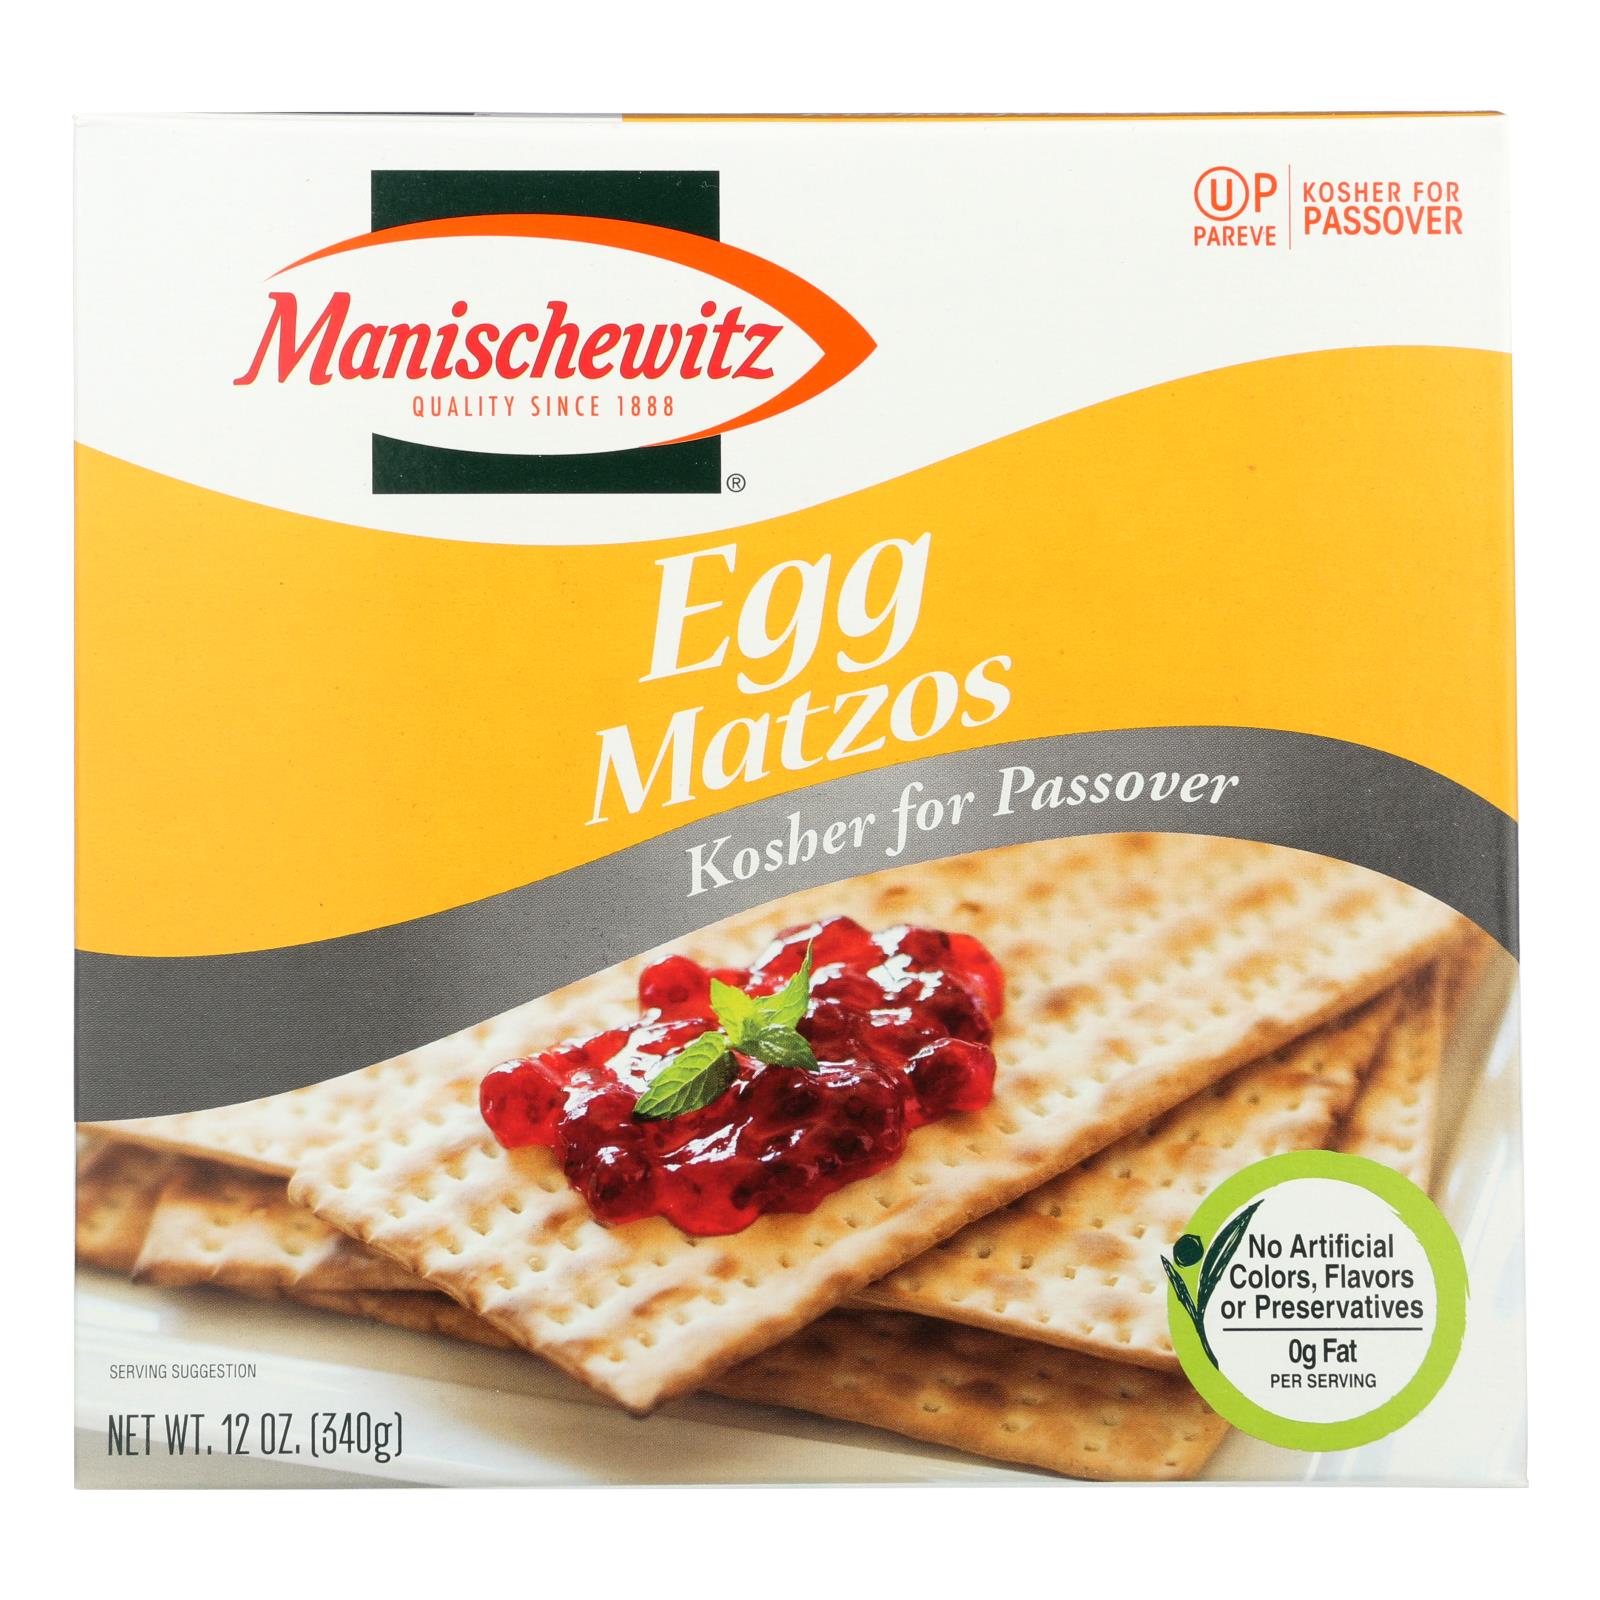 Manischewitz, Manischewitz - Egg Matzo - Passover - Caisse de 24 -12 oz (paquet de 24)